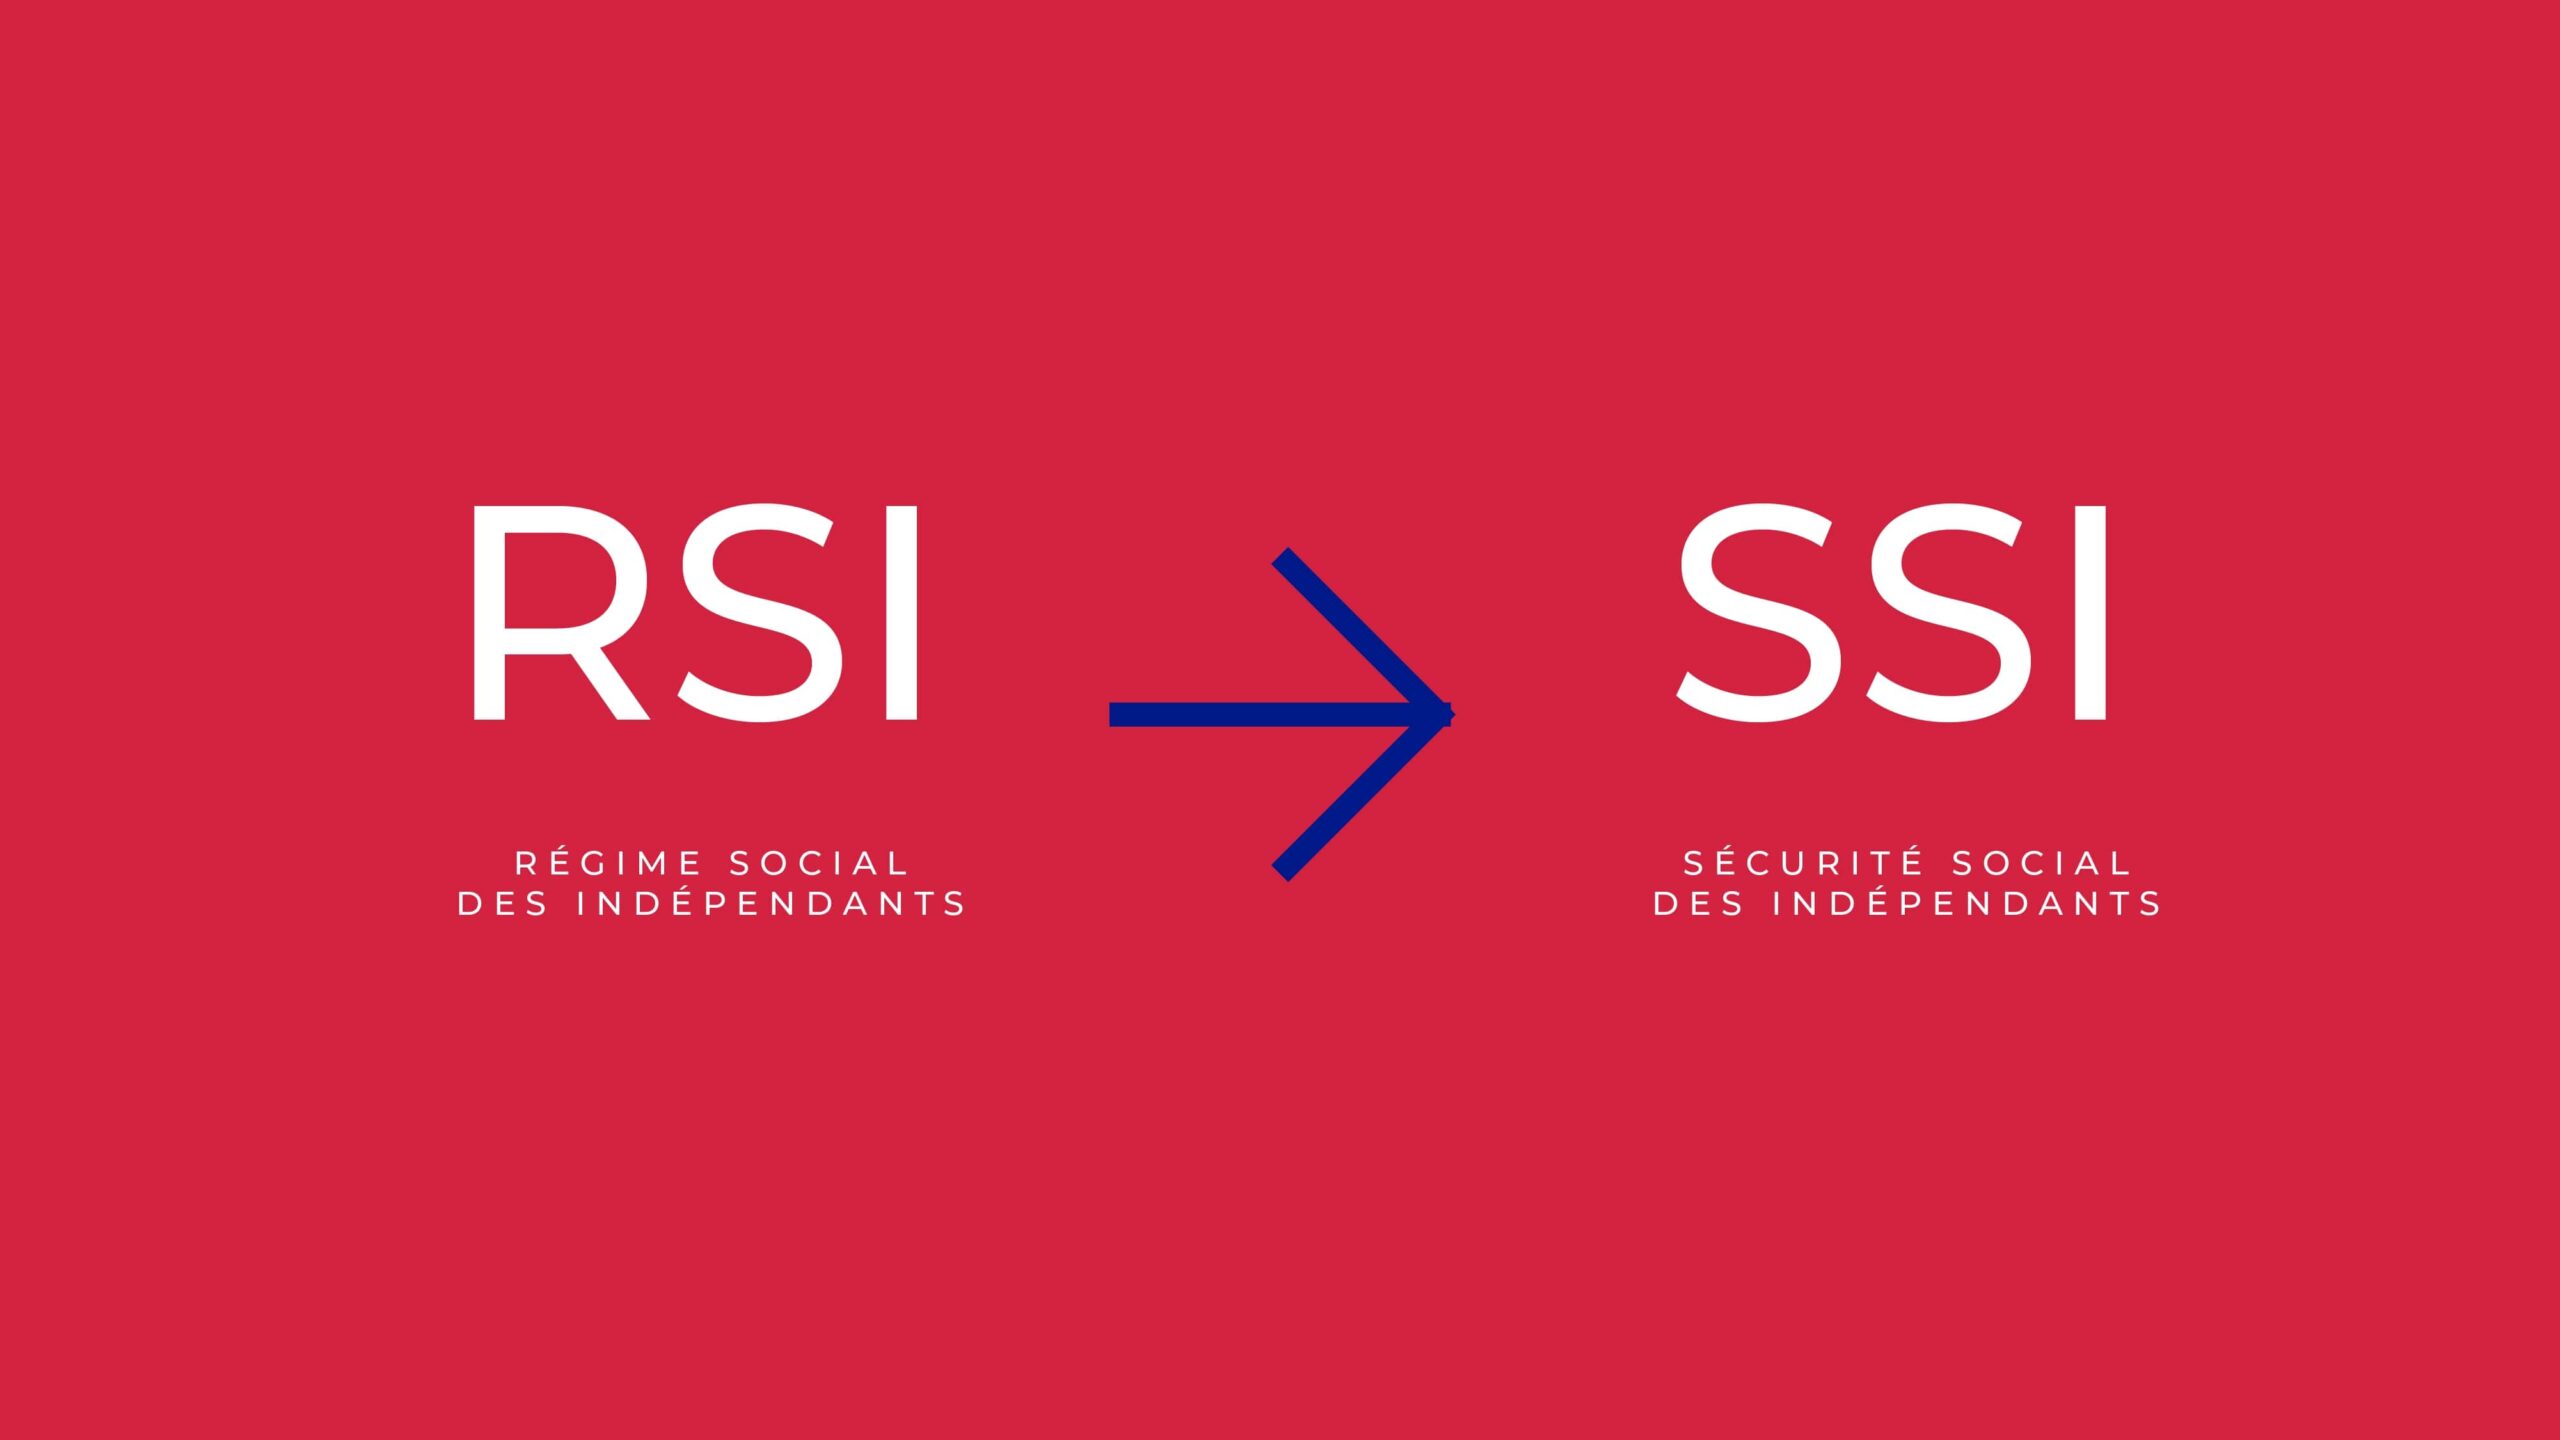 RSI - régime social des indépendants / SSI - sécurité social des indépendants